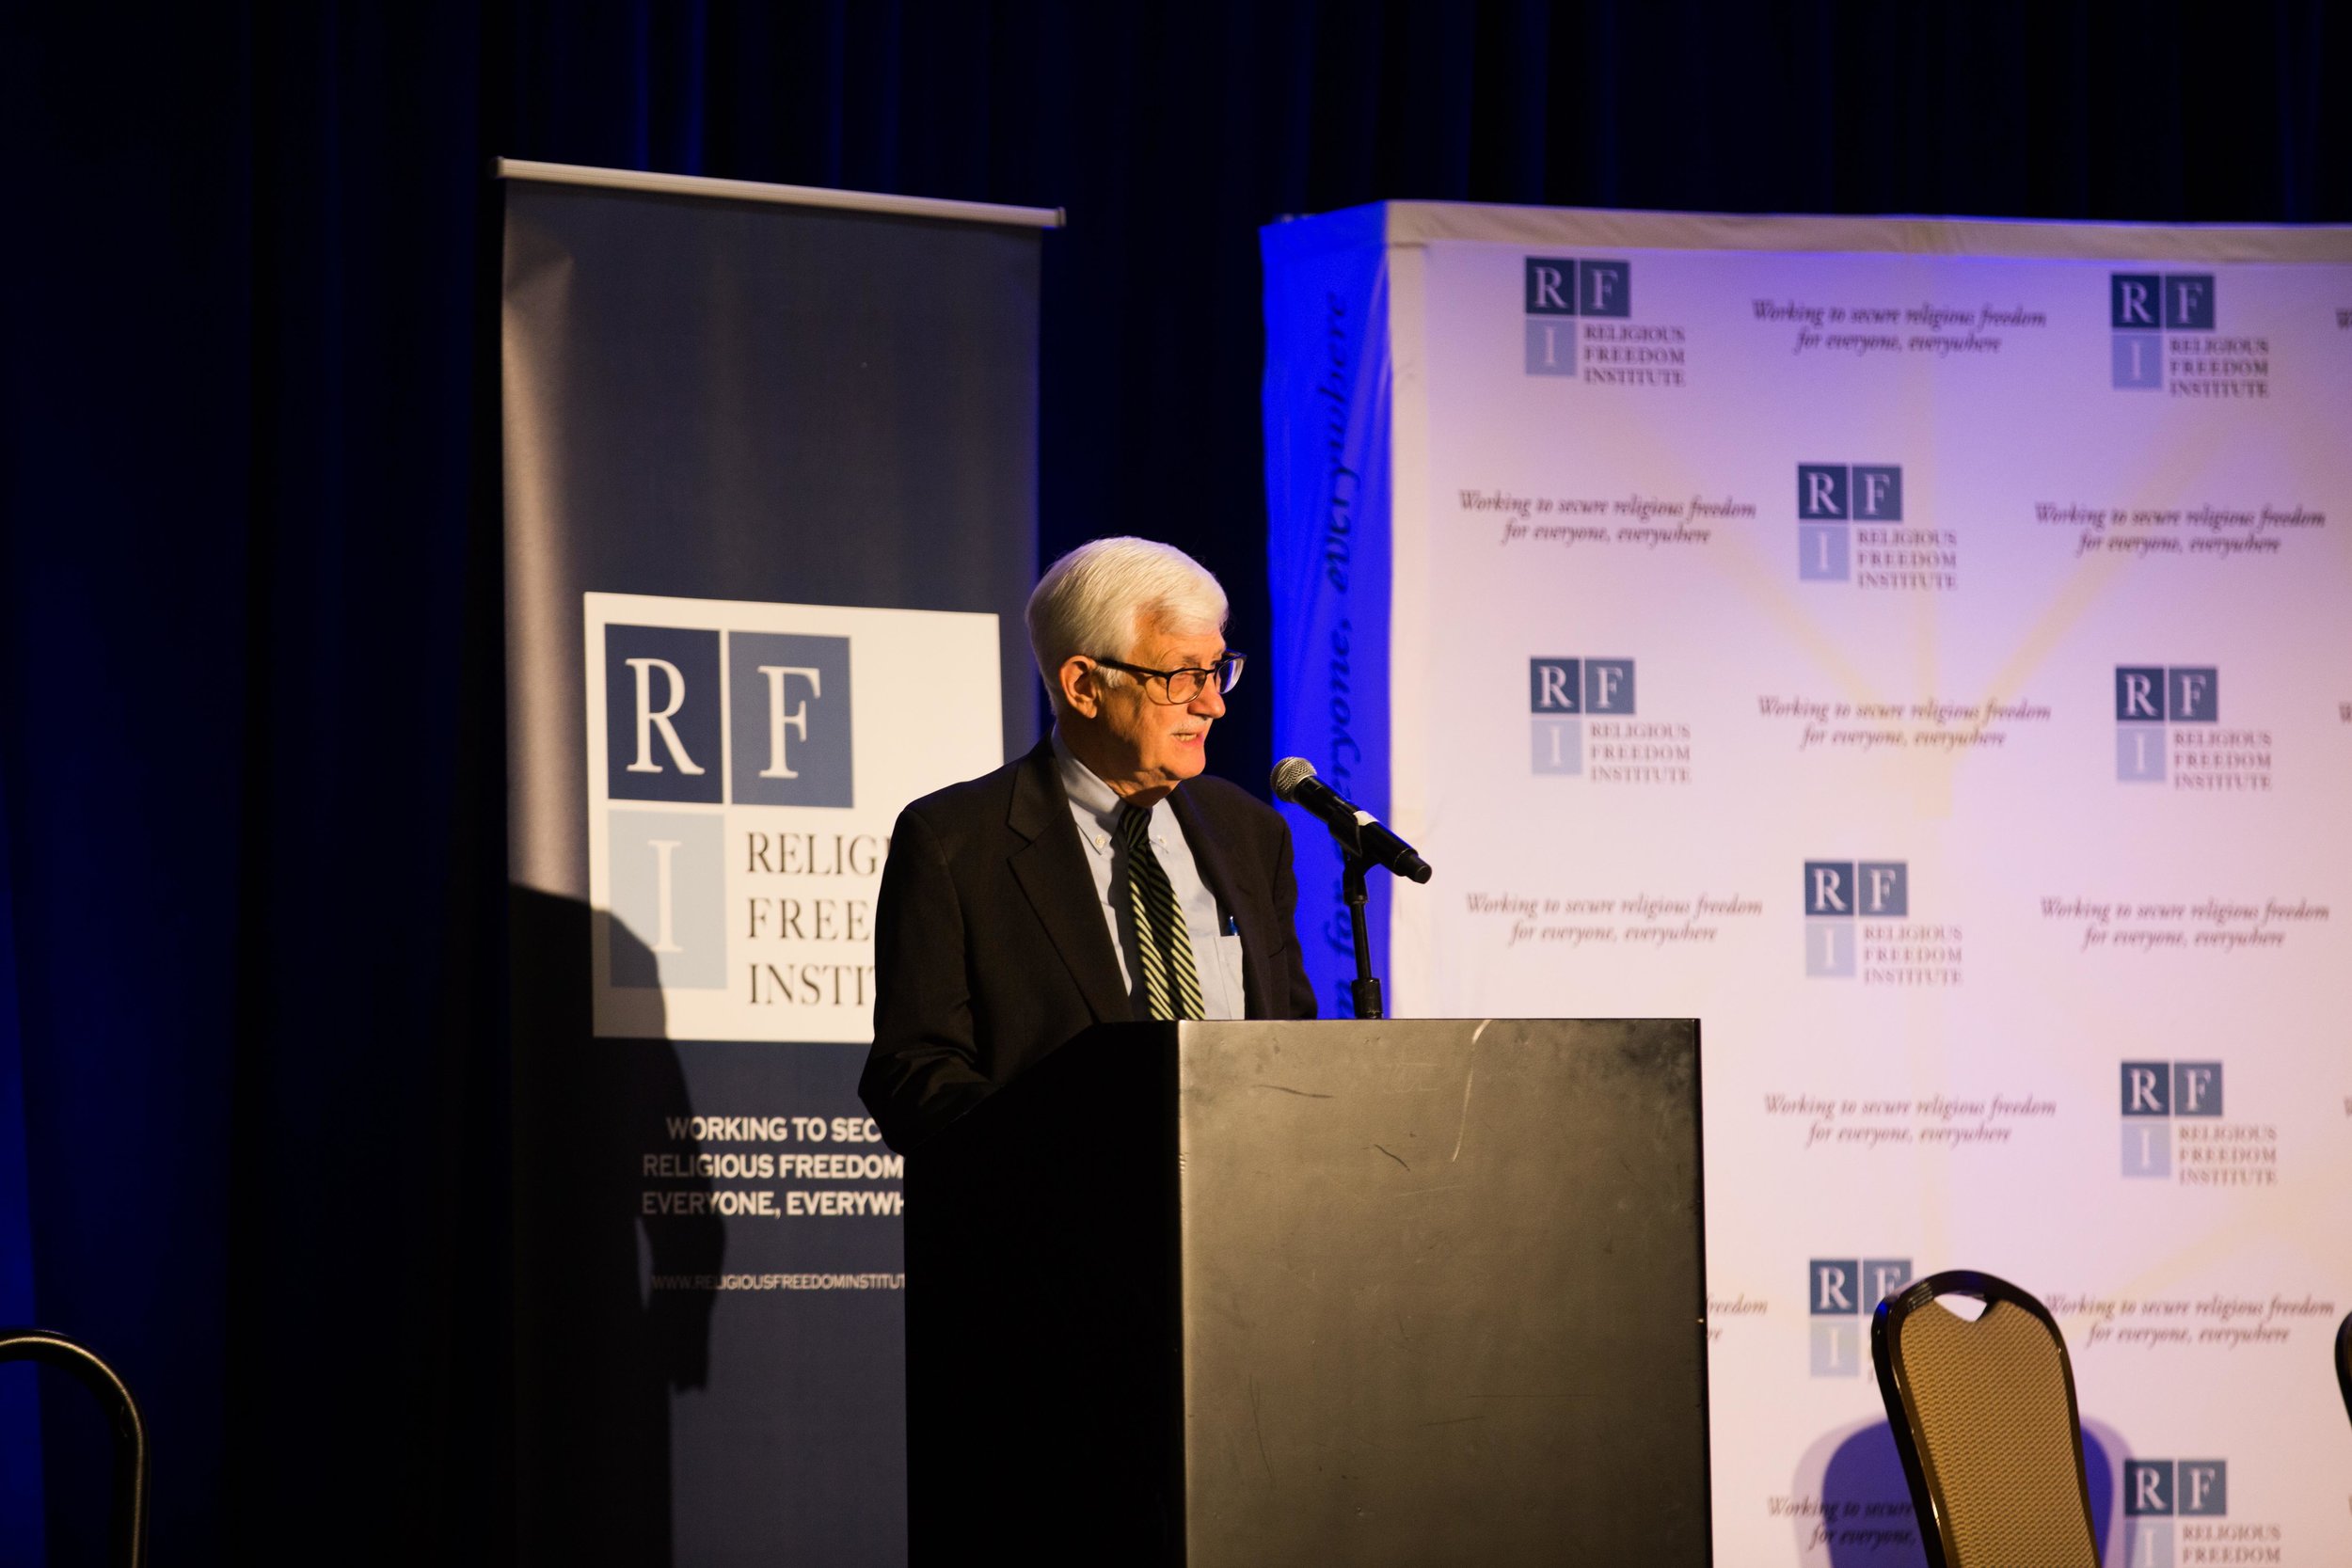 Thomas Farr, President, Religious Freedom Institute gives opening remarks. Photo: RFI/Margaret Wroblewski